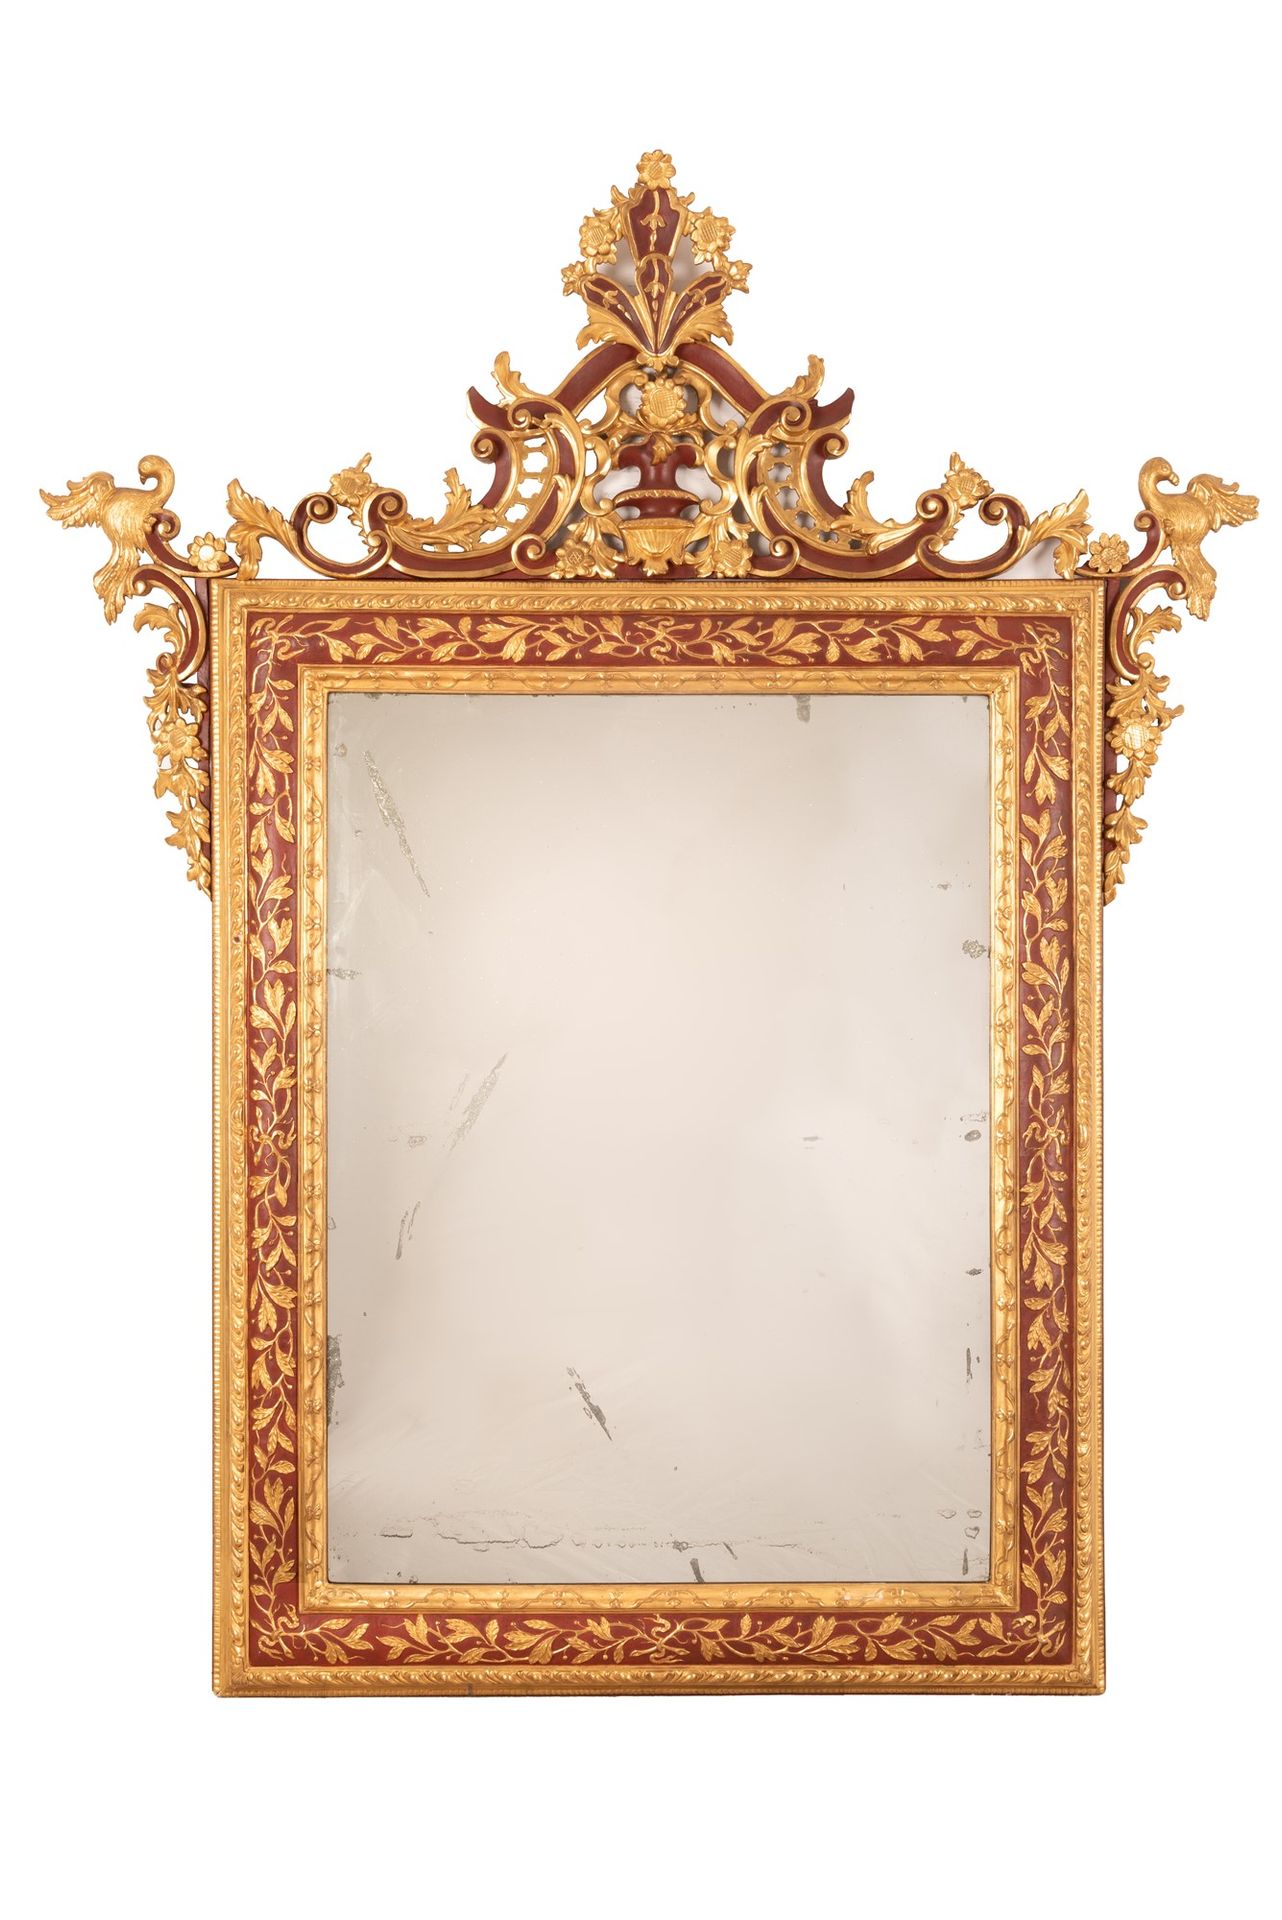 Antica specchiera in legno dorato e lacca rossa 175x141厘米；内部光线101x76厘米 2